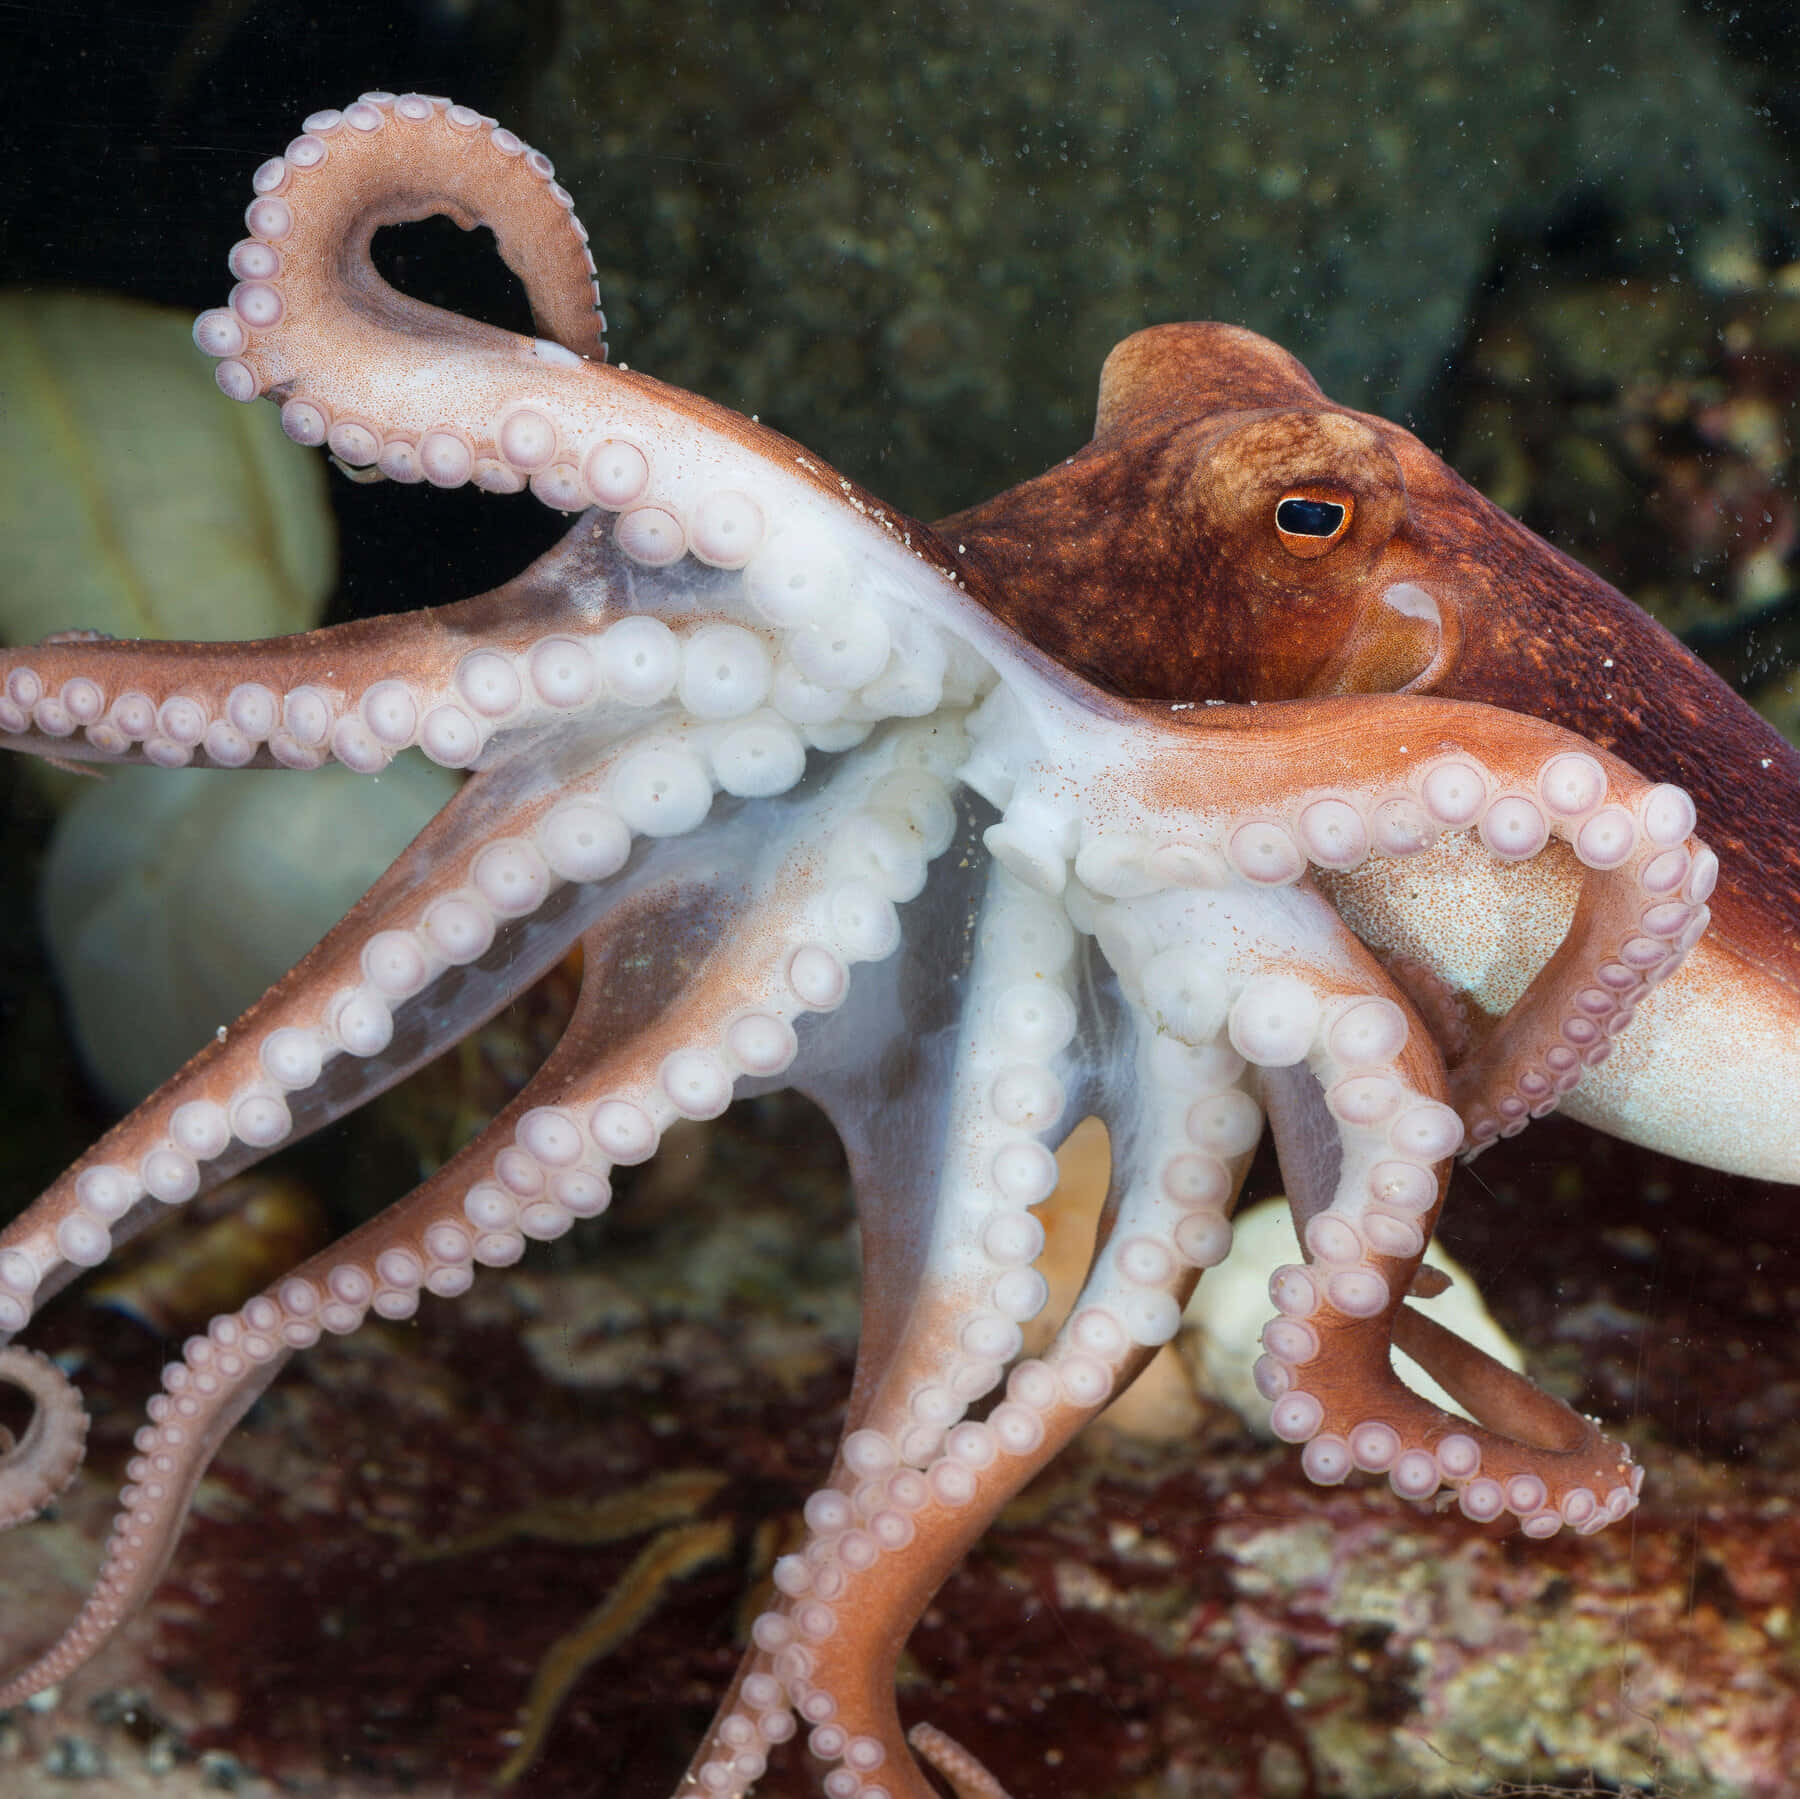 An incredible close-up of an Octopus